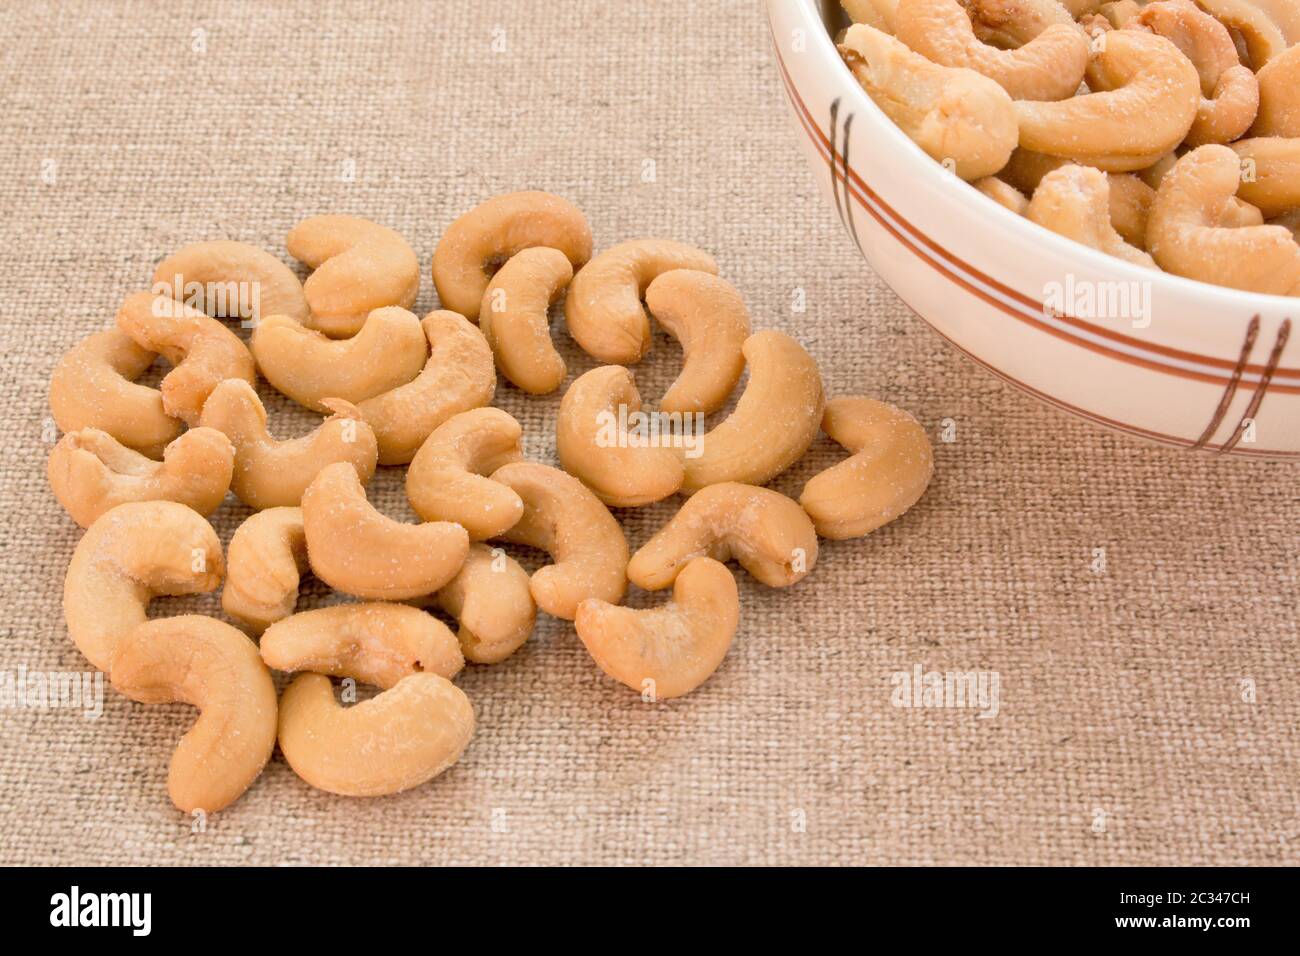 roasted cashews Stock Photo